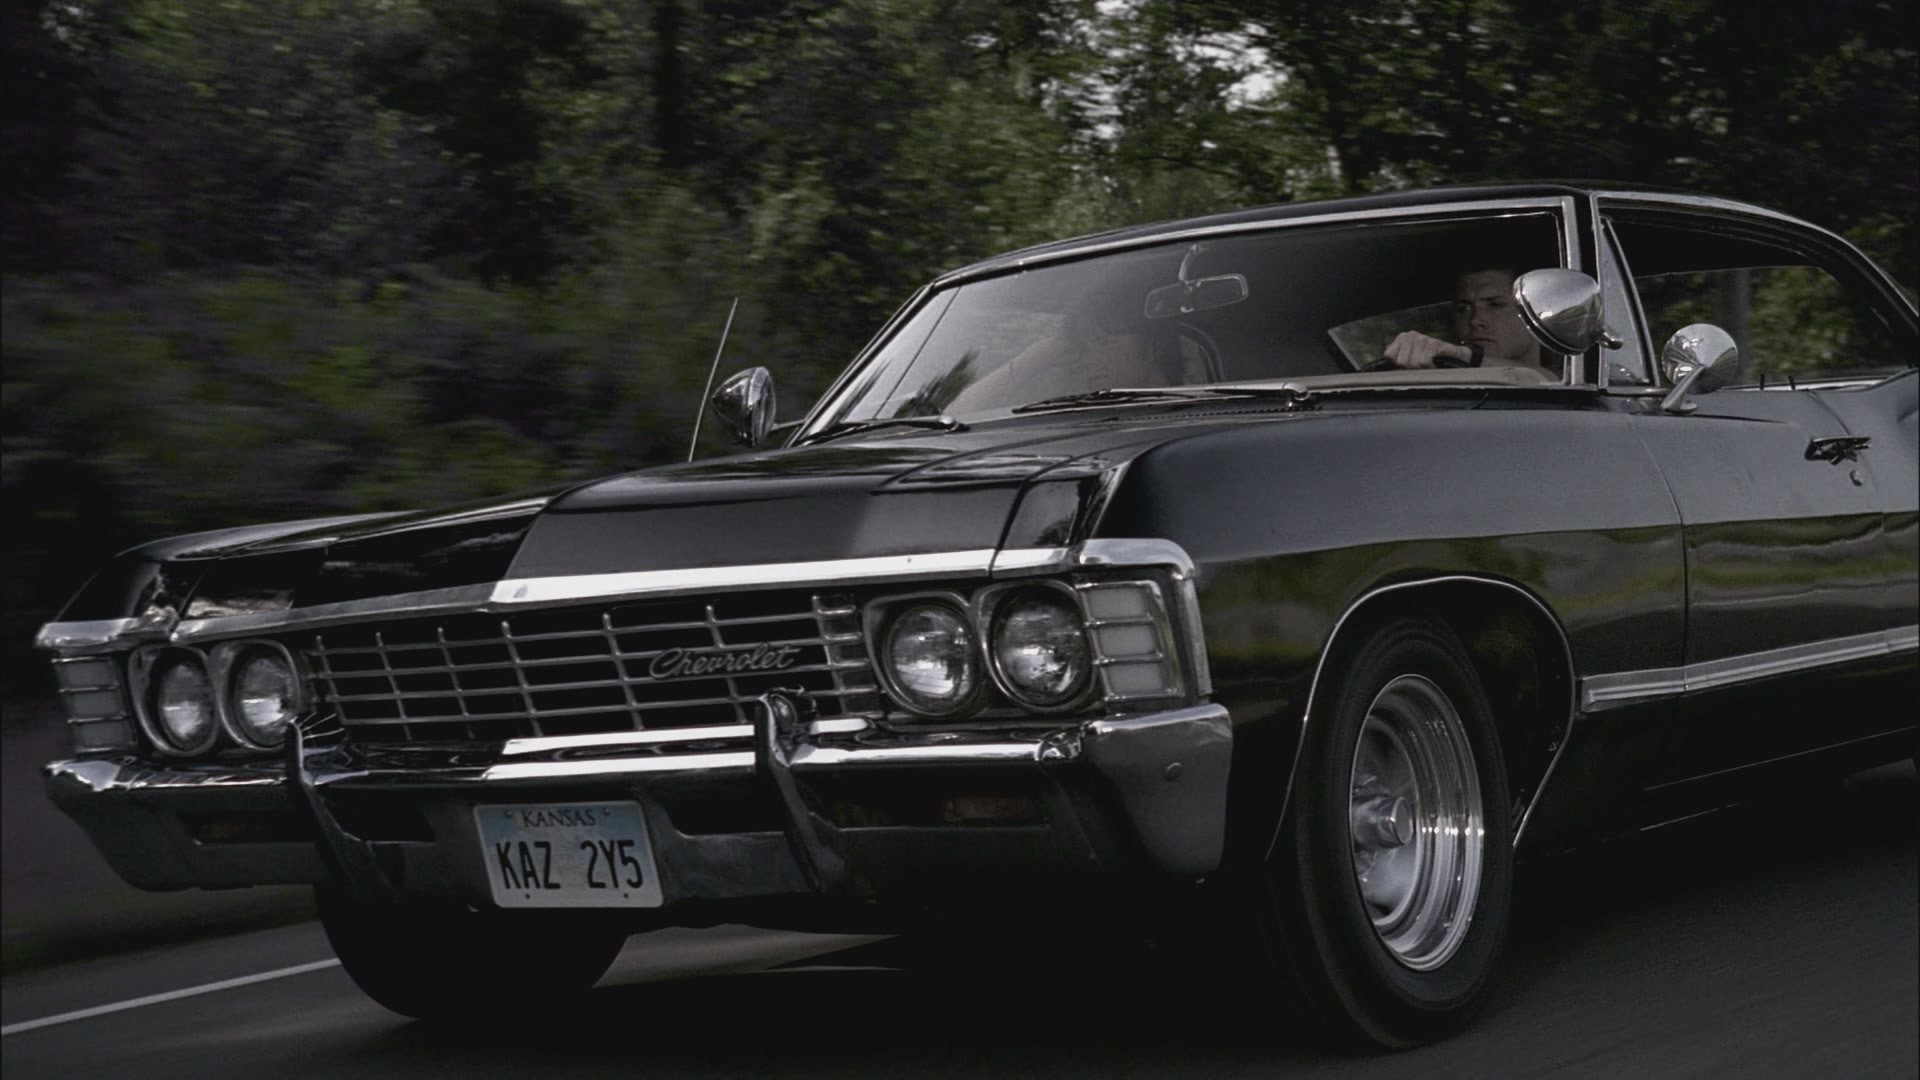 Pop-Culture Icons: Supernatural's Impala